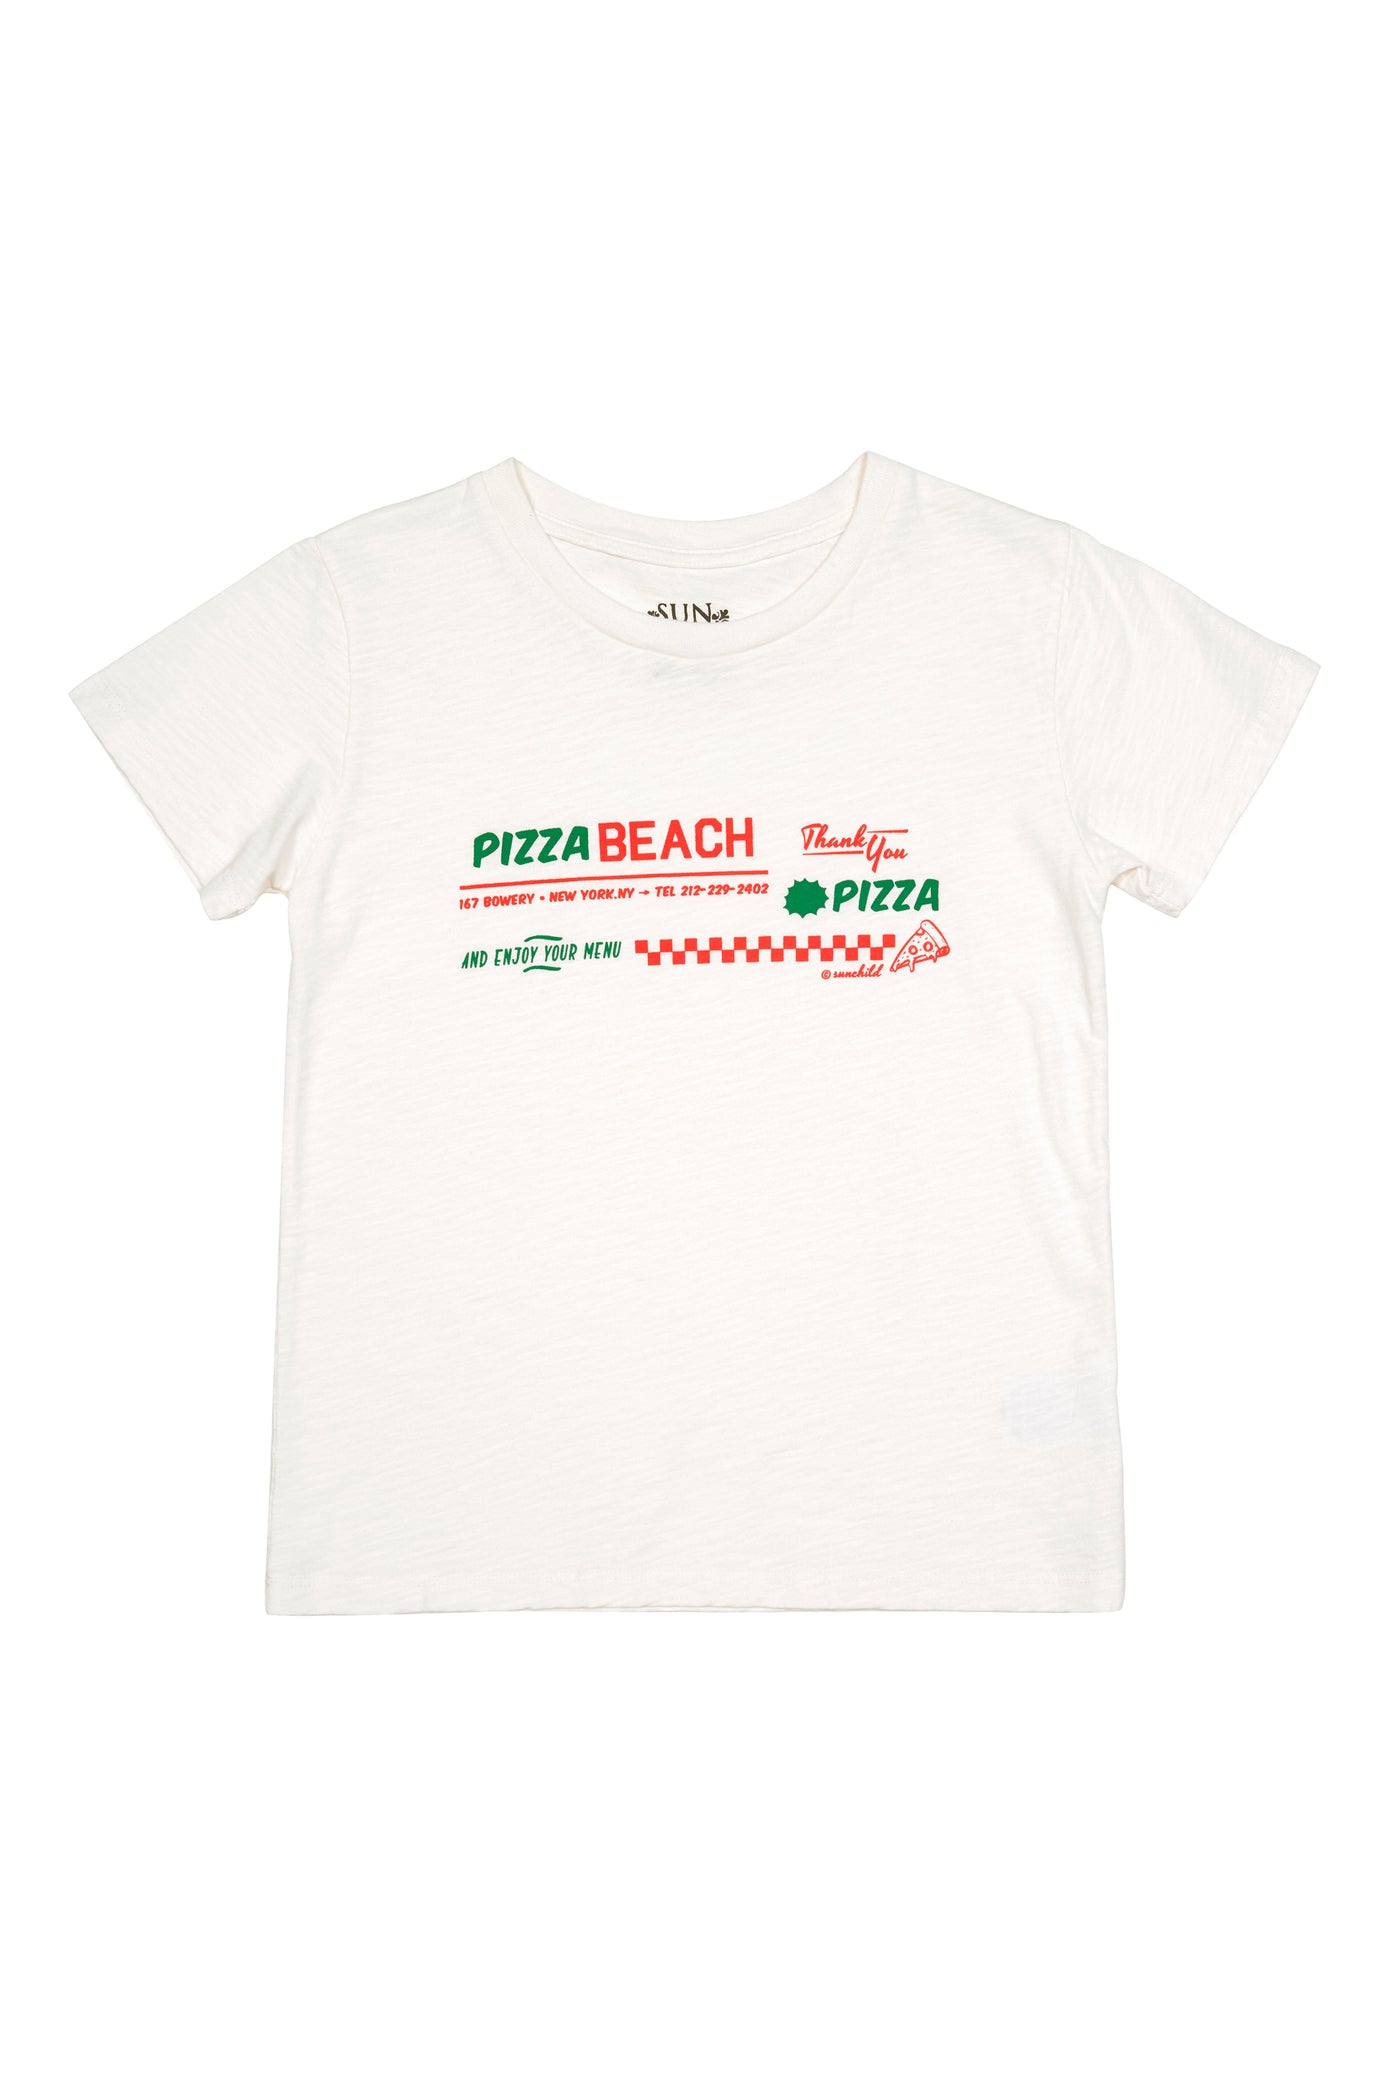 Pizza Beach T-Shirt